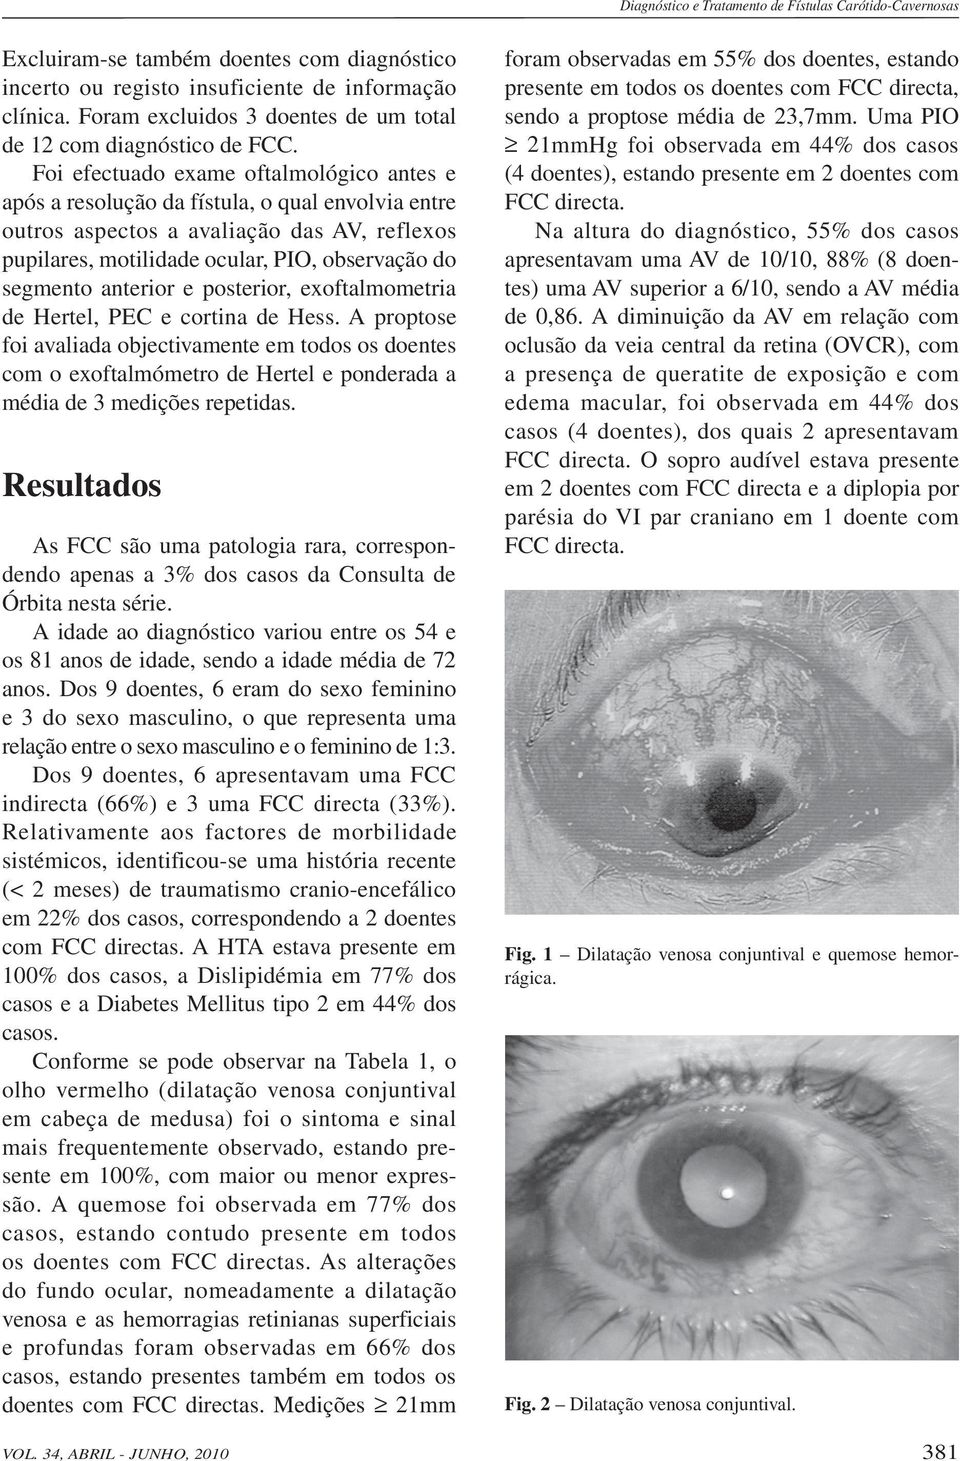 Foi efectuado exame oftalmológico antes e após a resolução da fístula, o qual envolvia entre outros aspectos a avaliação das AV, reflexos pupilares, motilidade ocular, PIO, observação do segmento